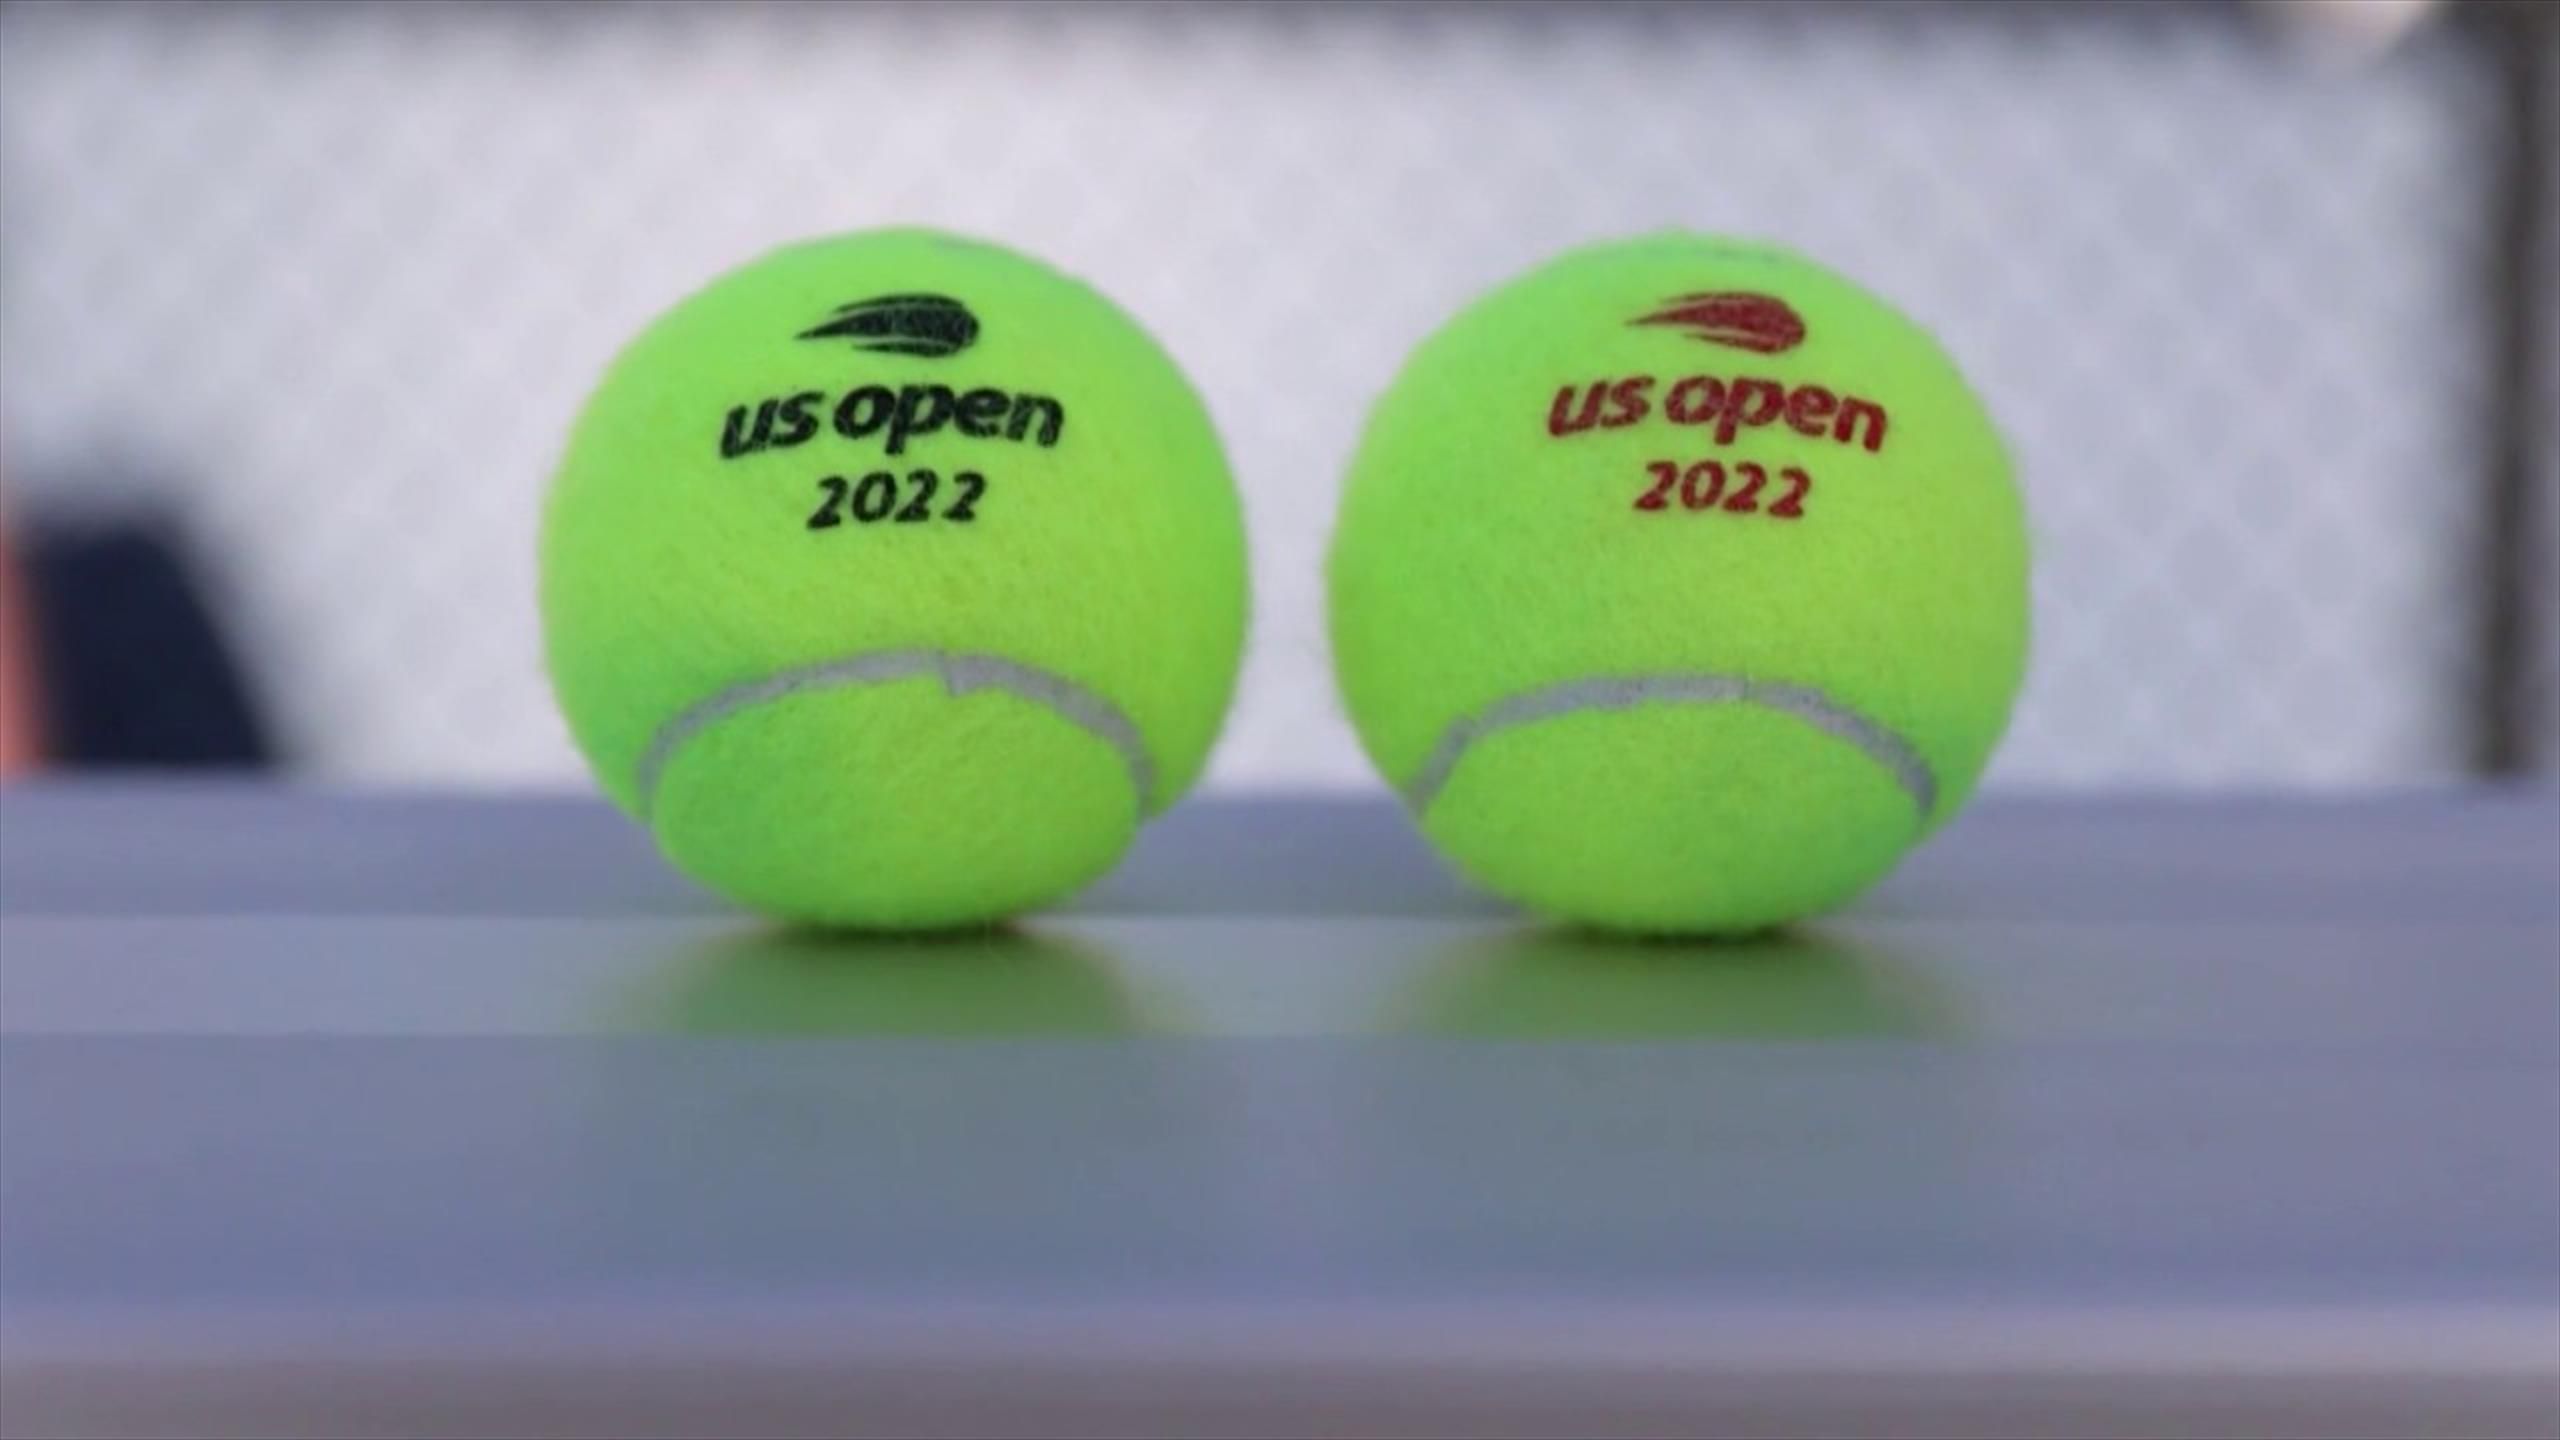 US Open - Kritik an unterschiedlichen Bällen für Männer und Frauen Zverev und Rittner beziehen Stellung - Tennis Video